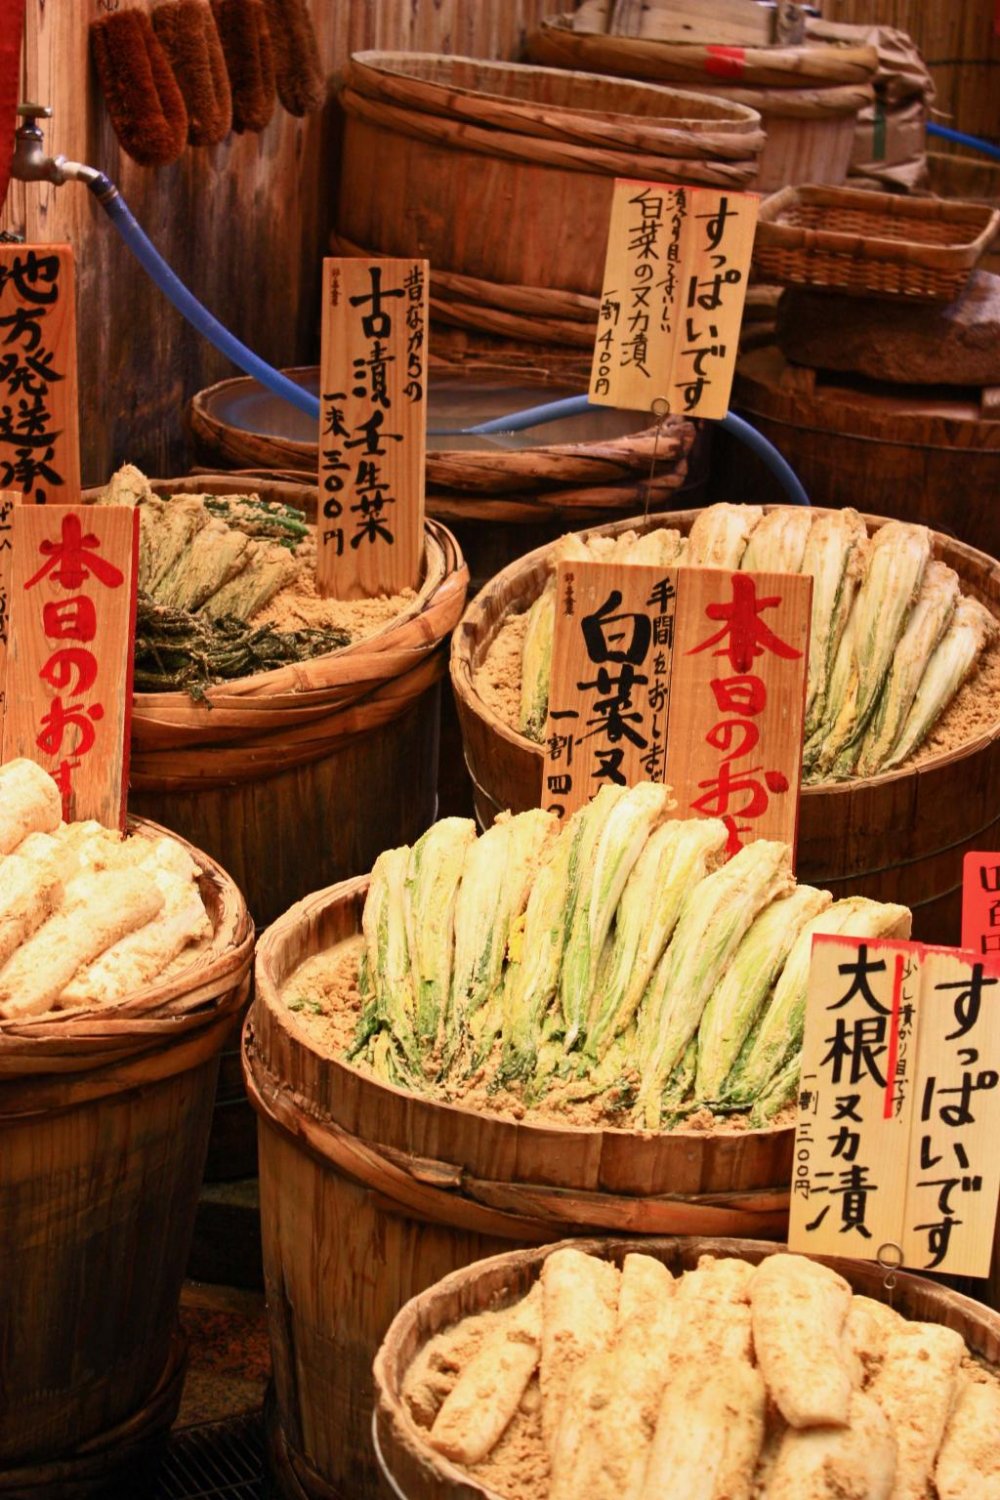 Berkeliling menjelajahi pasar Nishiki dan mencicipi berbagai tipe makanan seluruh Jepang. &nbsp;Banyak toko menawarkan cicipan gratis, merupakan waktu yang tepat untuk berani dan mencoba sesuatu yang baru.